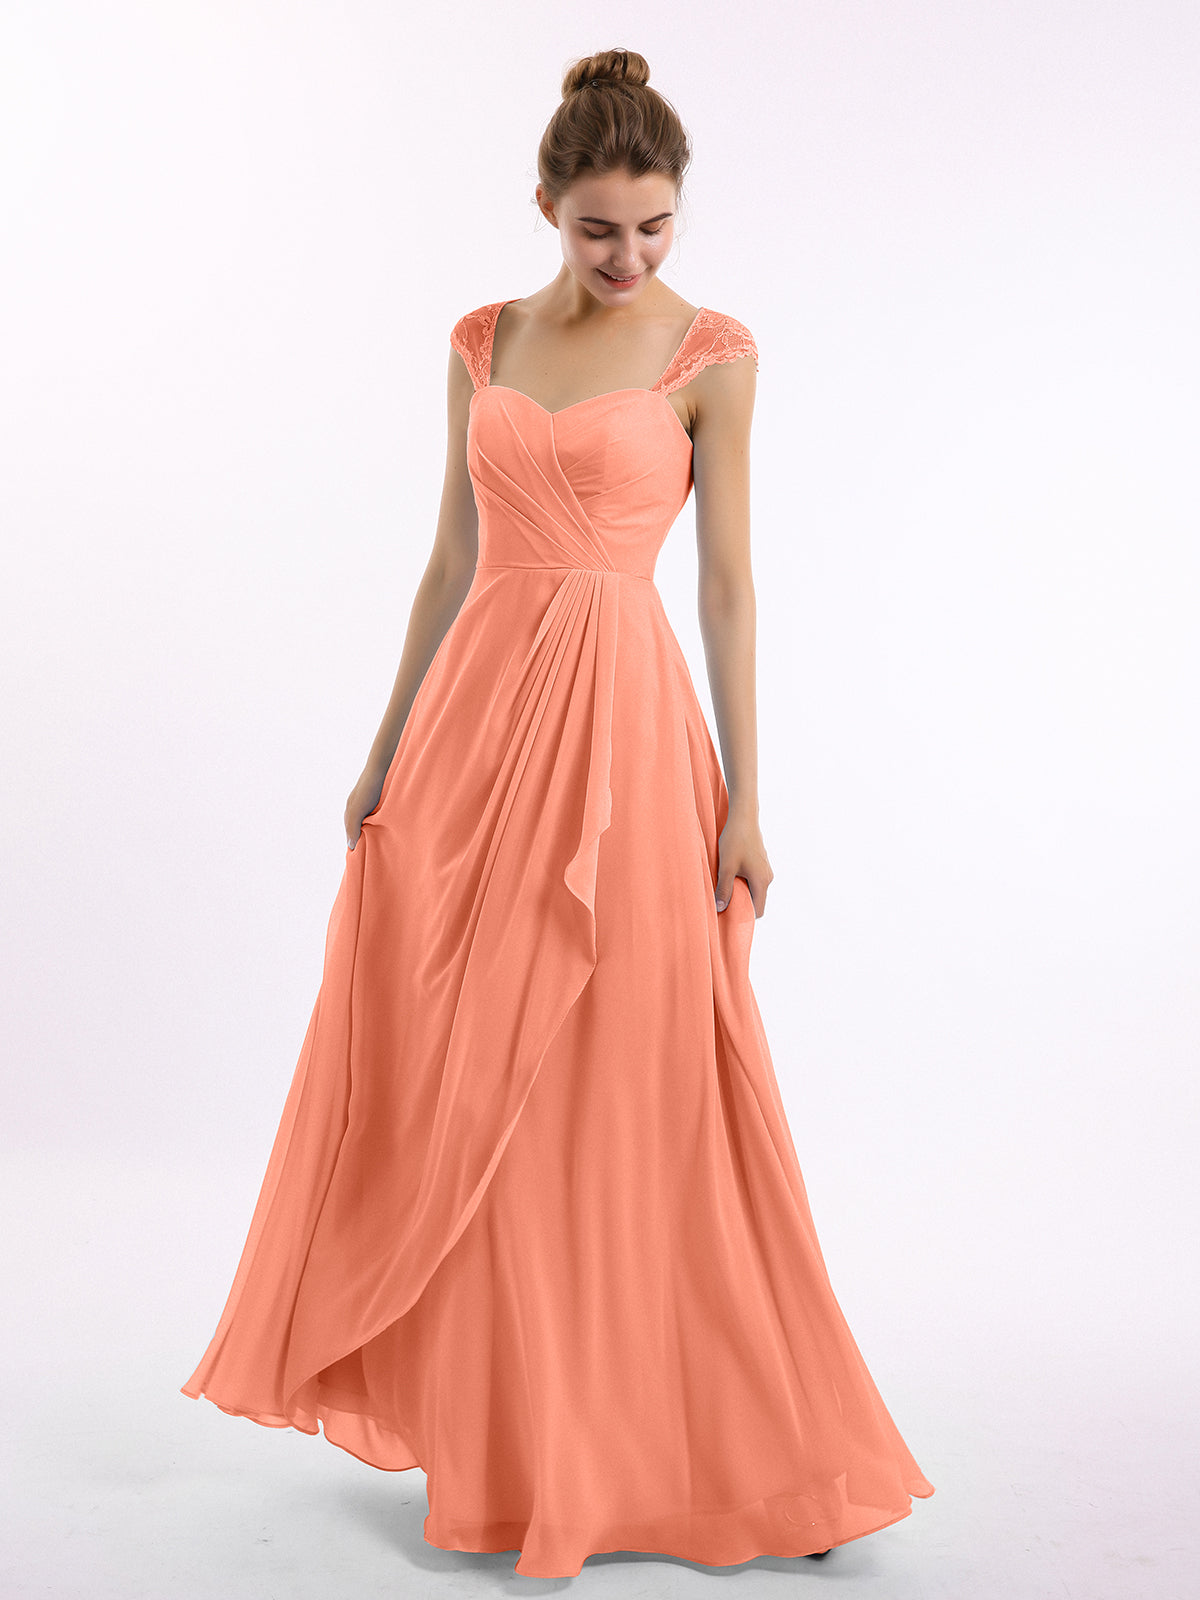 Marley OG Flamingo Dress – Little Party Dress